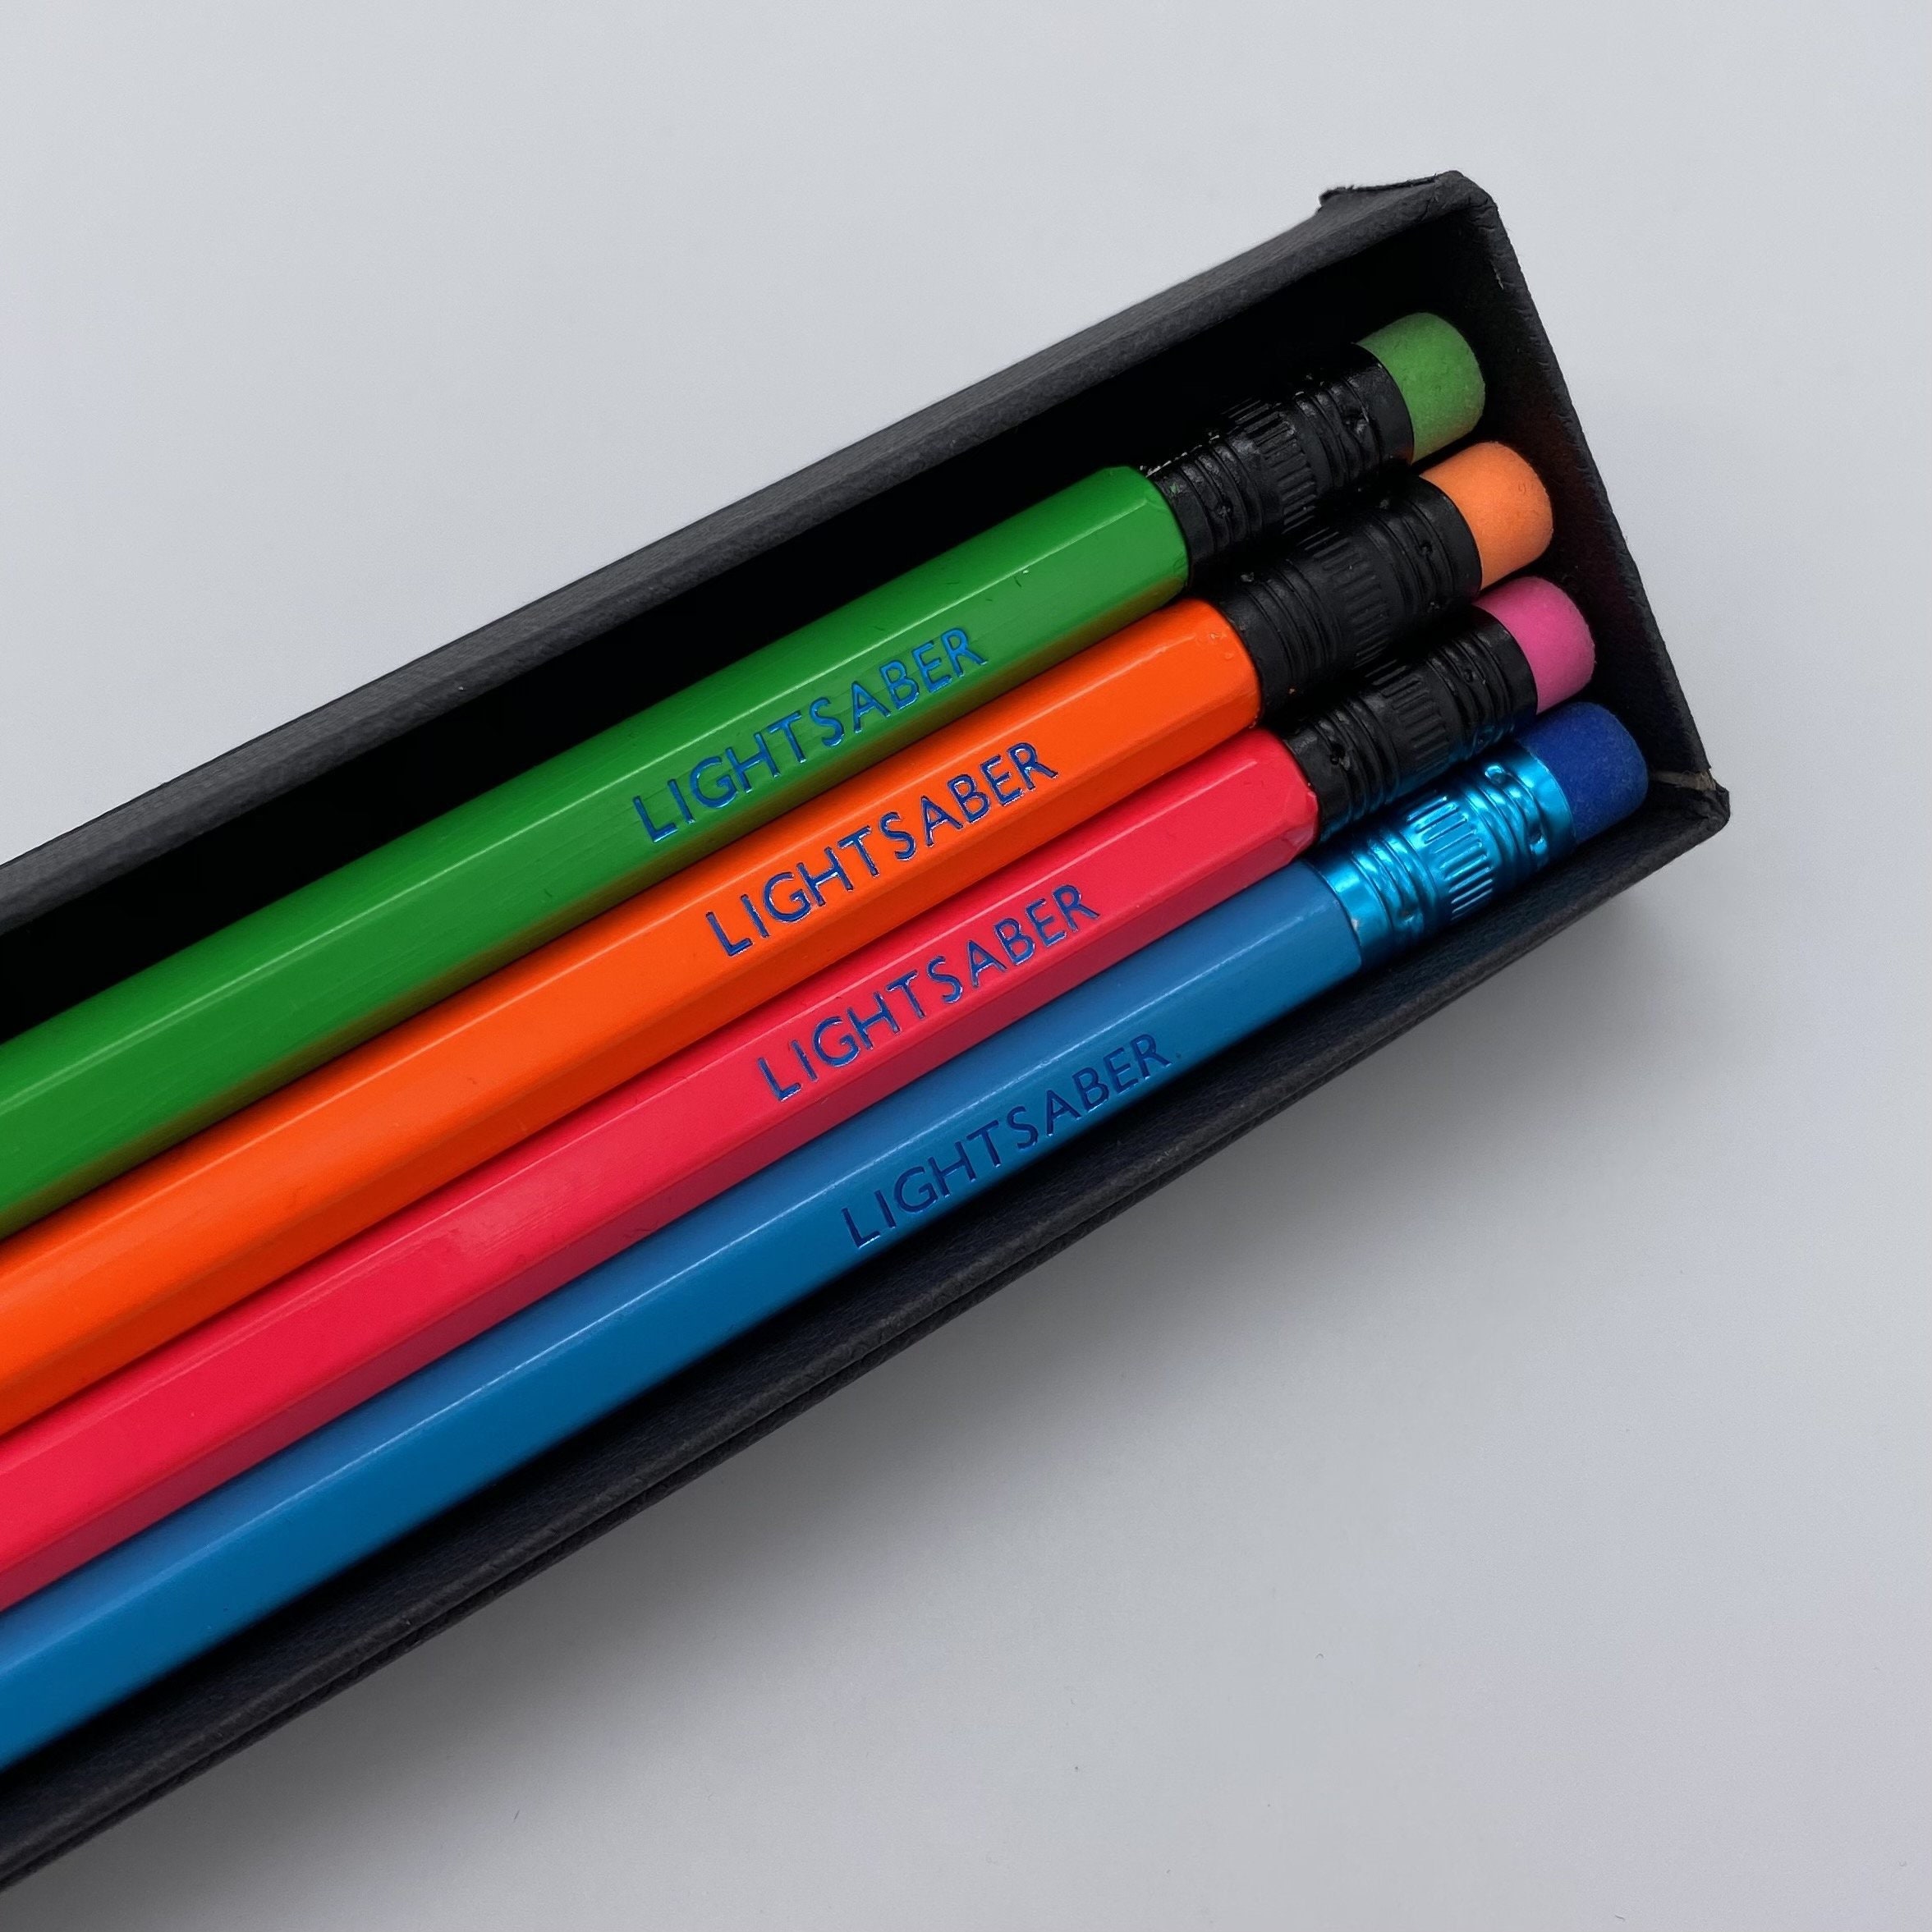 Lightsaber Pencils - Etsy